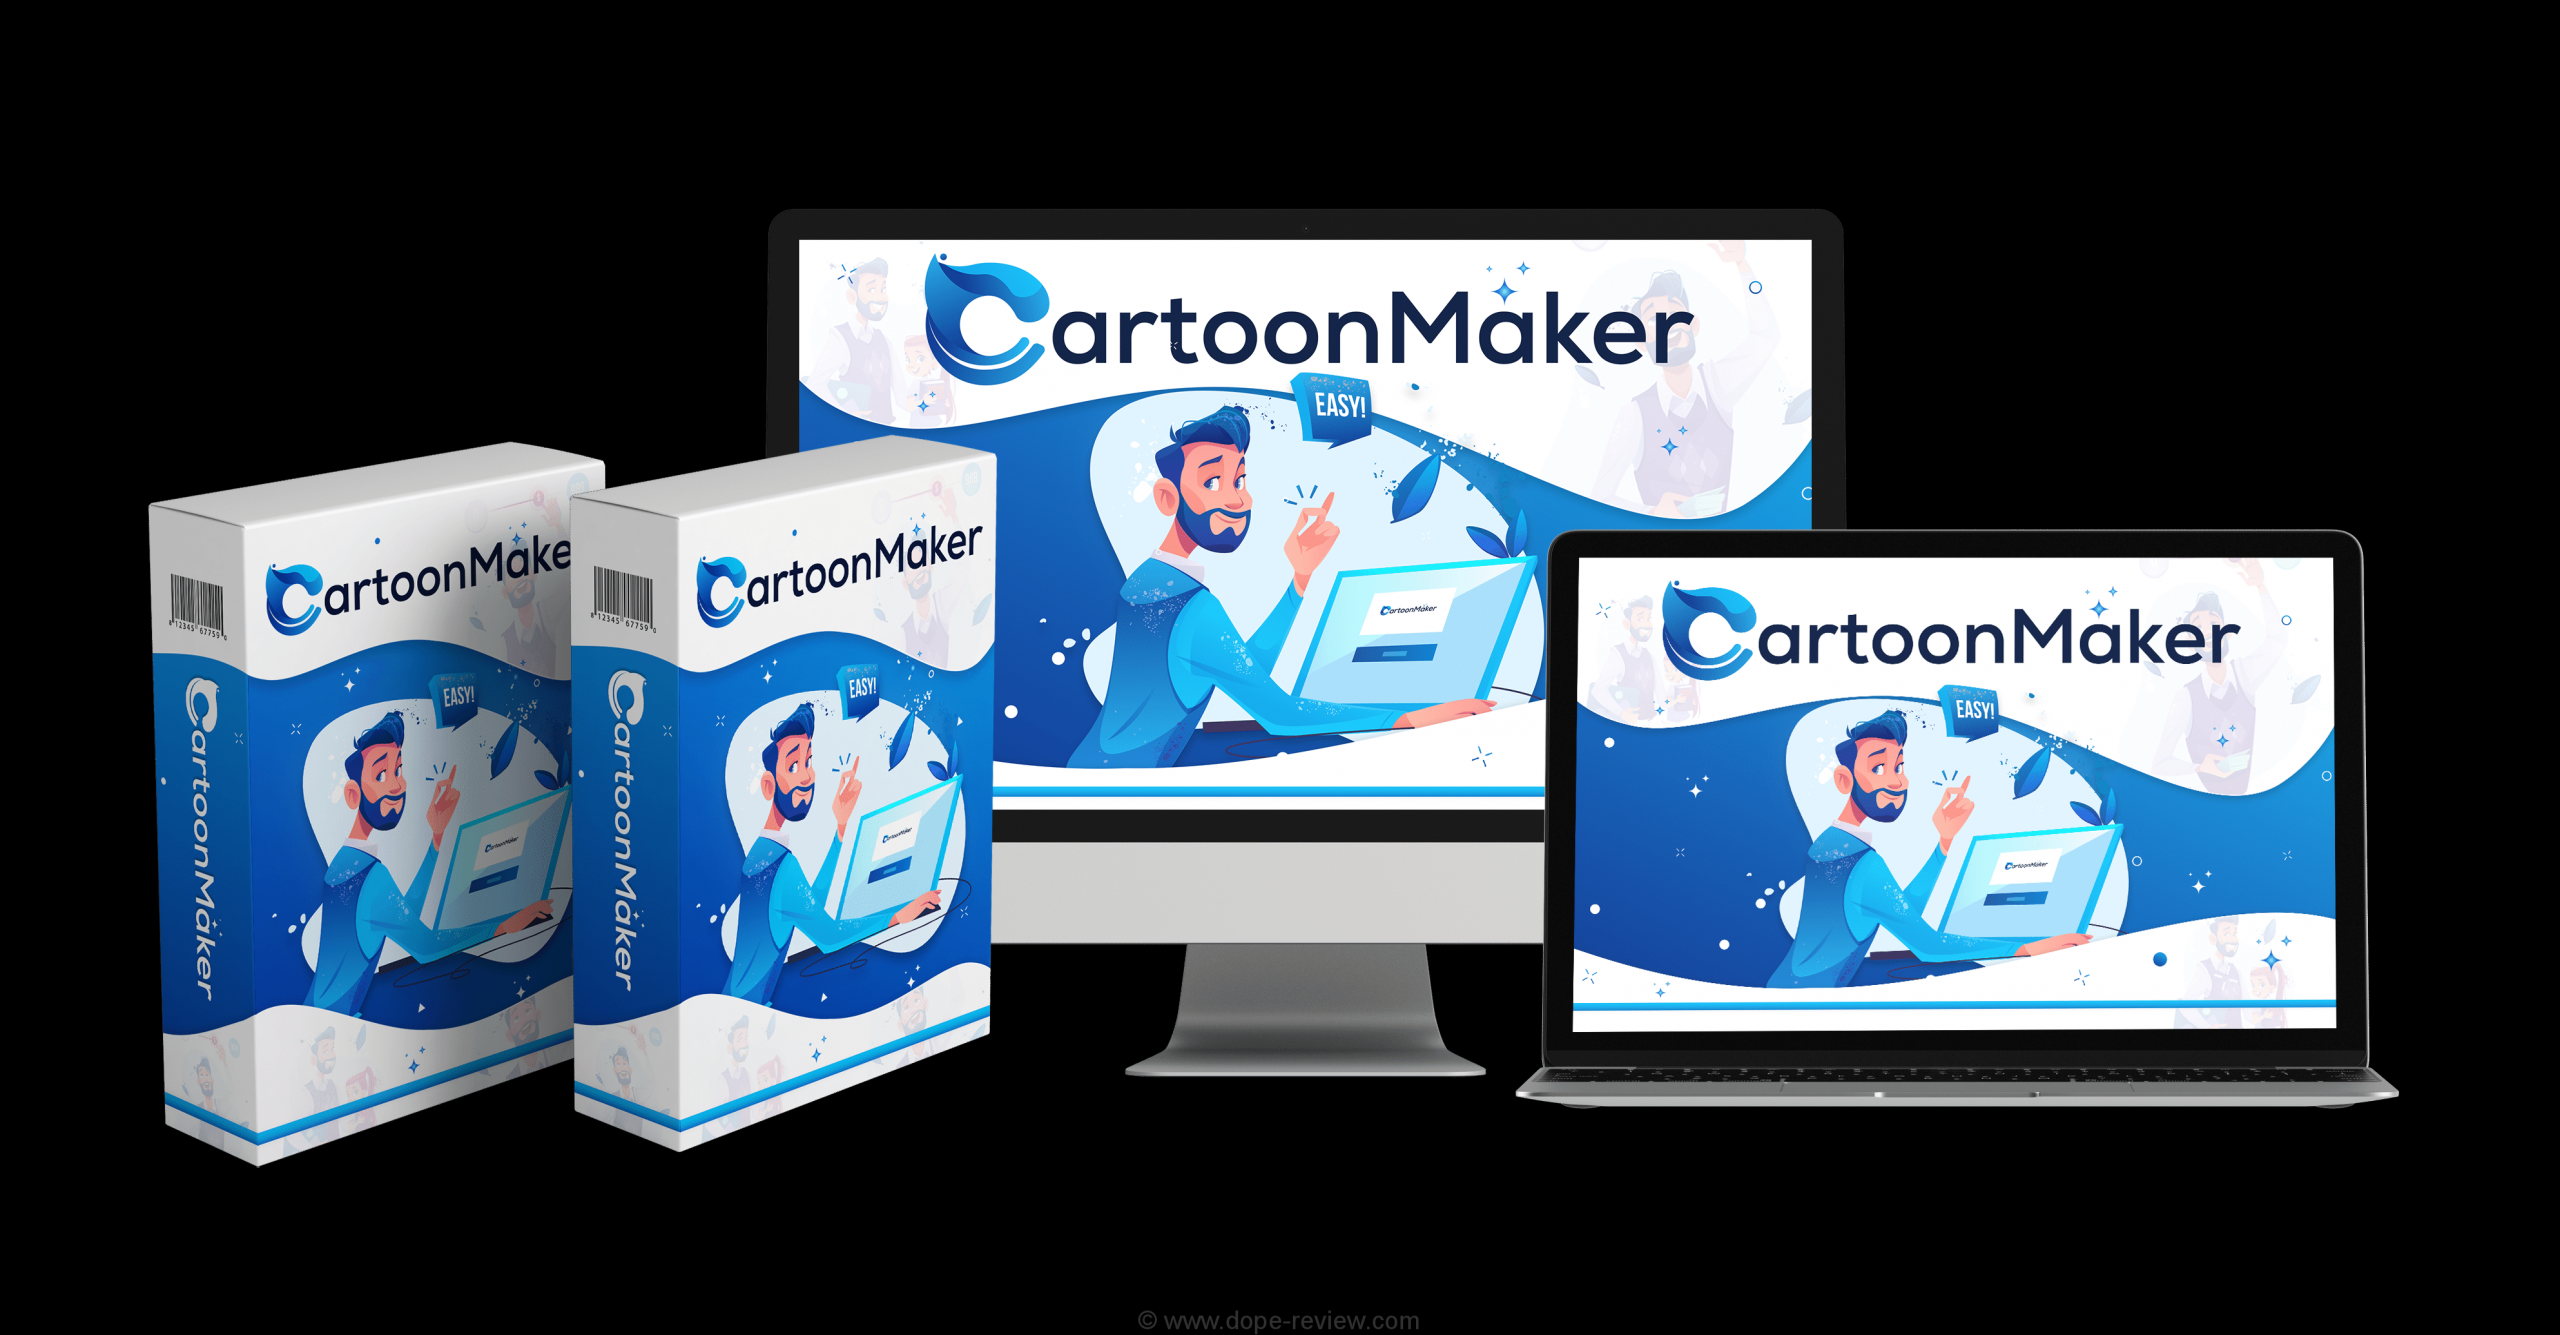 CartoonMaker Review